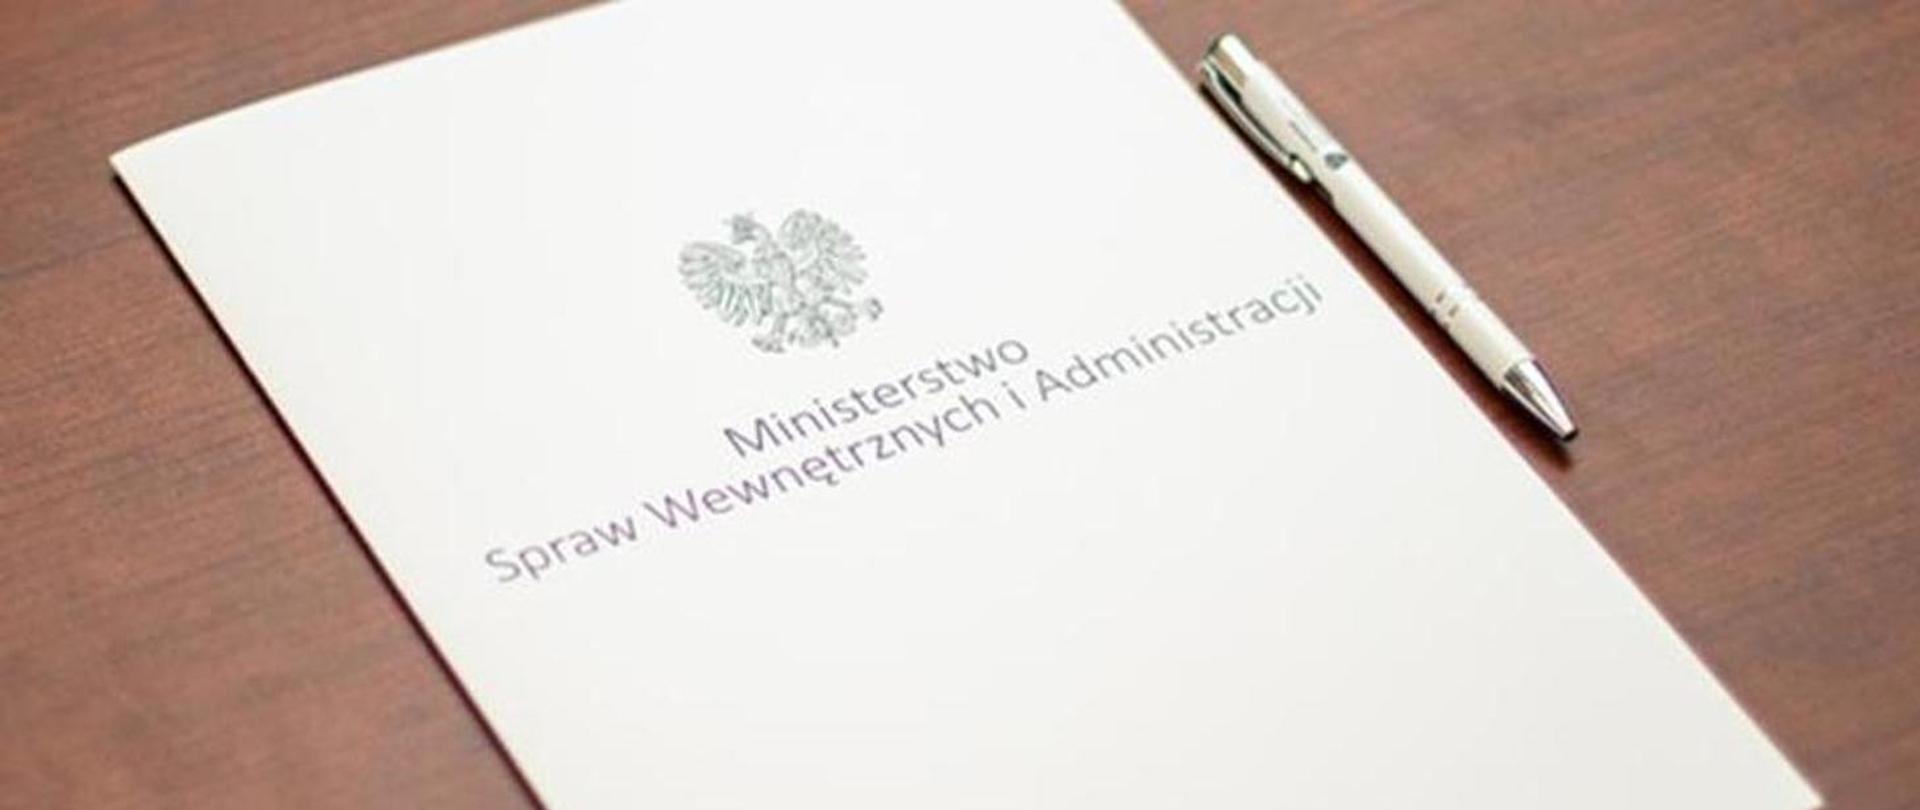 Na zdjęciu widać białą teczkę z godłem Polski i napisem Ministerstwo Spraw Wewnętrznych i Administracji